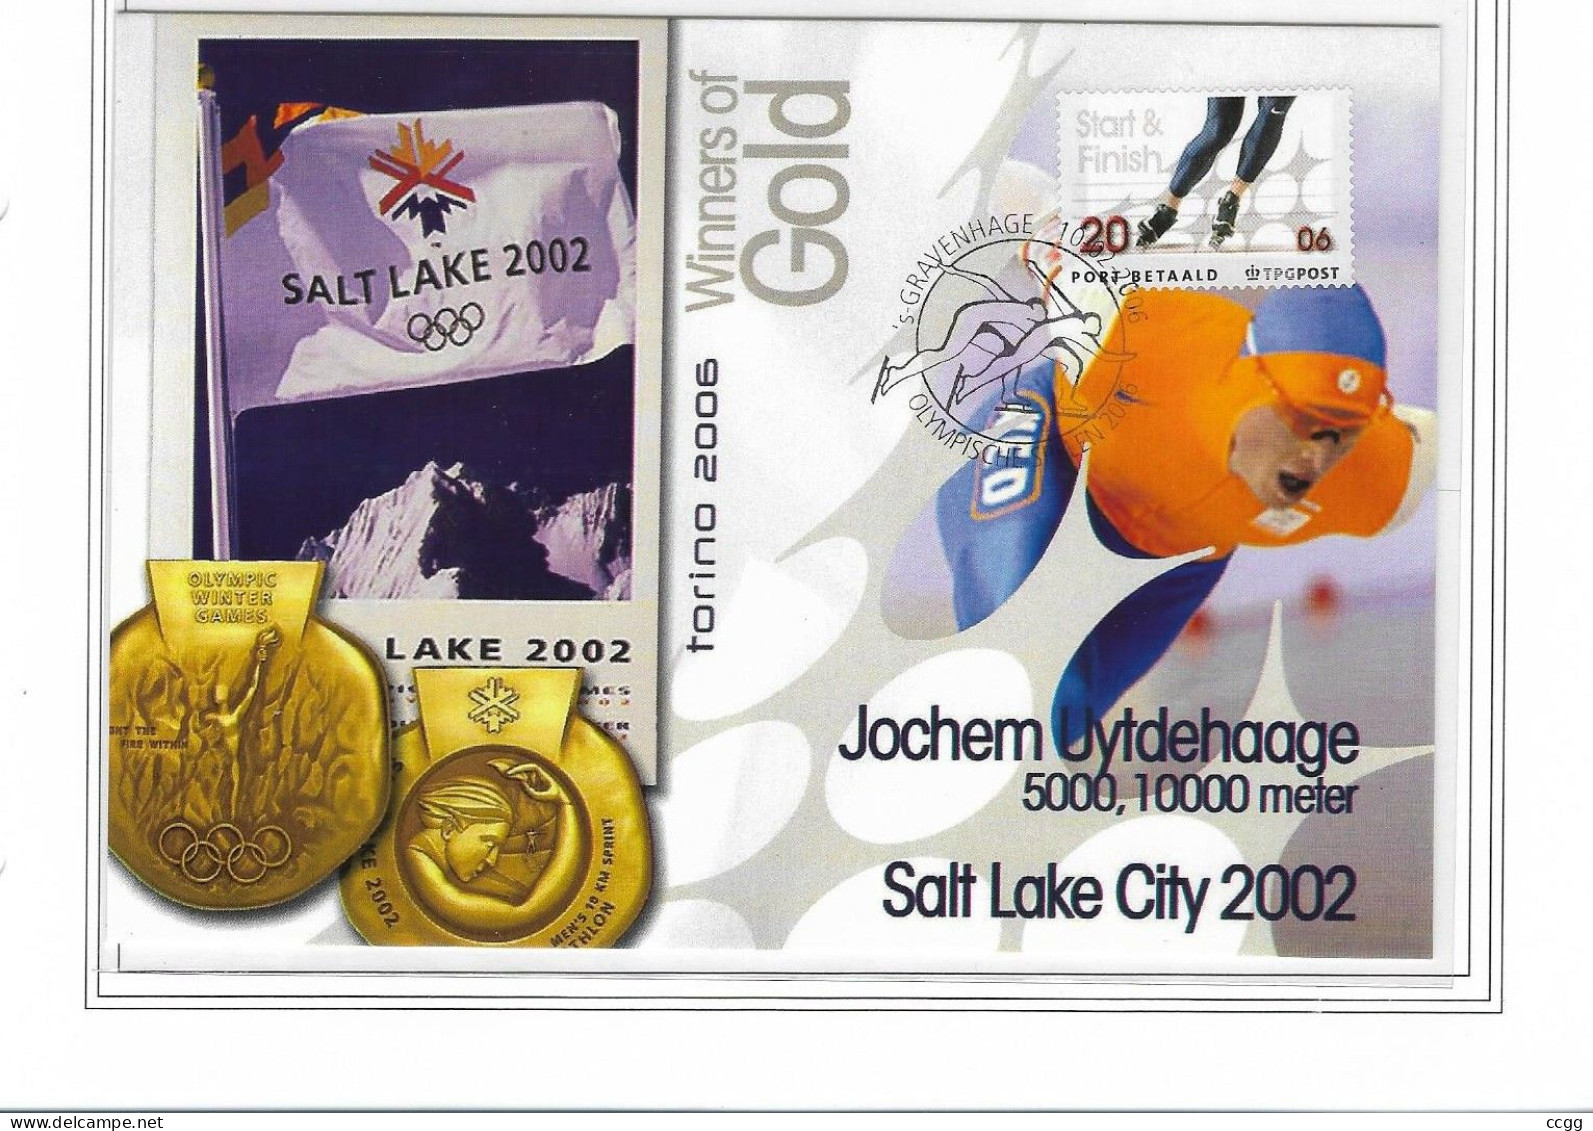 Olympische Spelen 2006 , Nederland - Postkaart - Invierno 2006: Turín